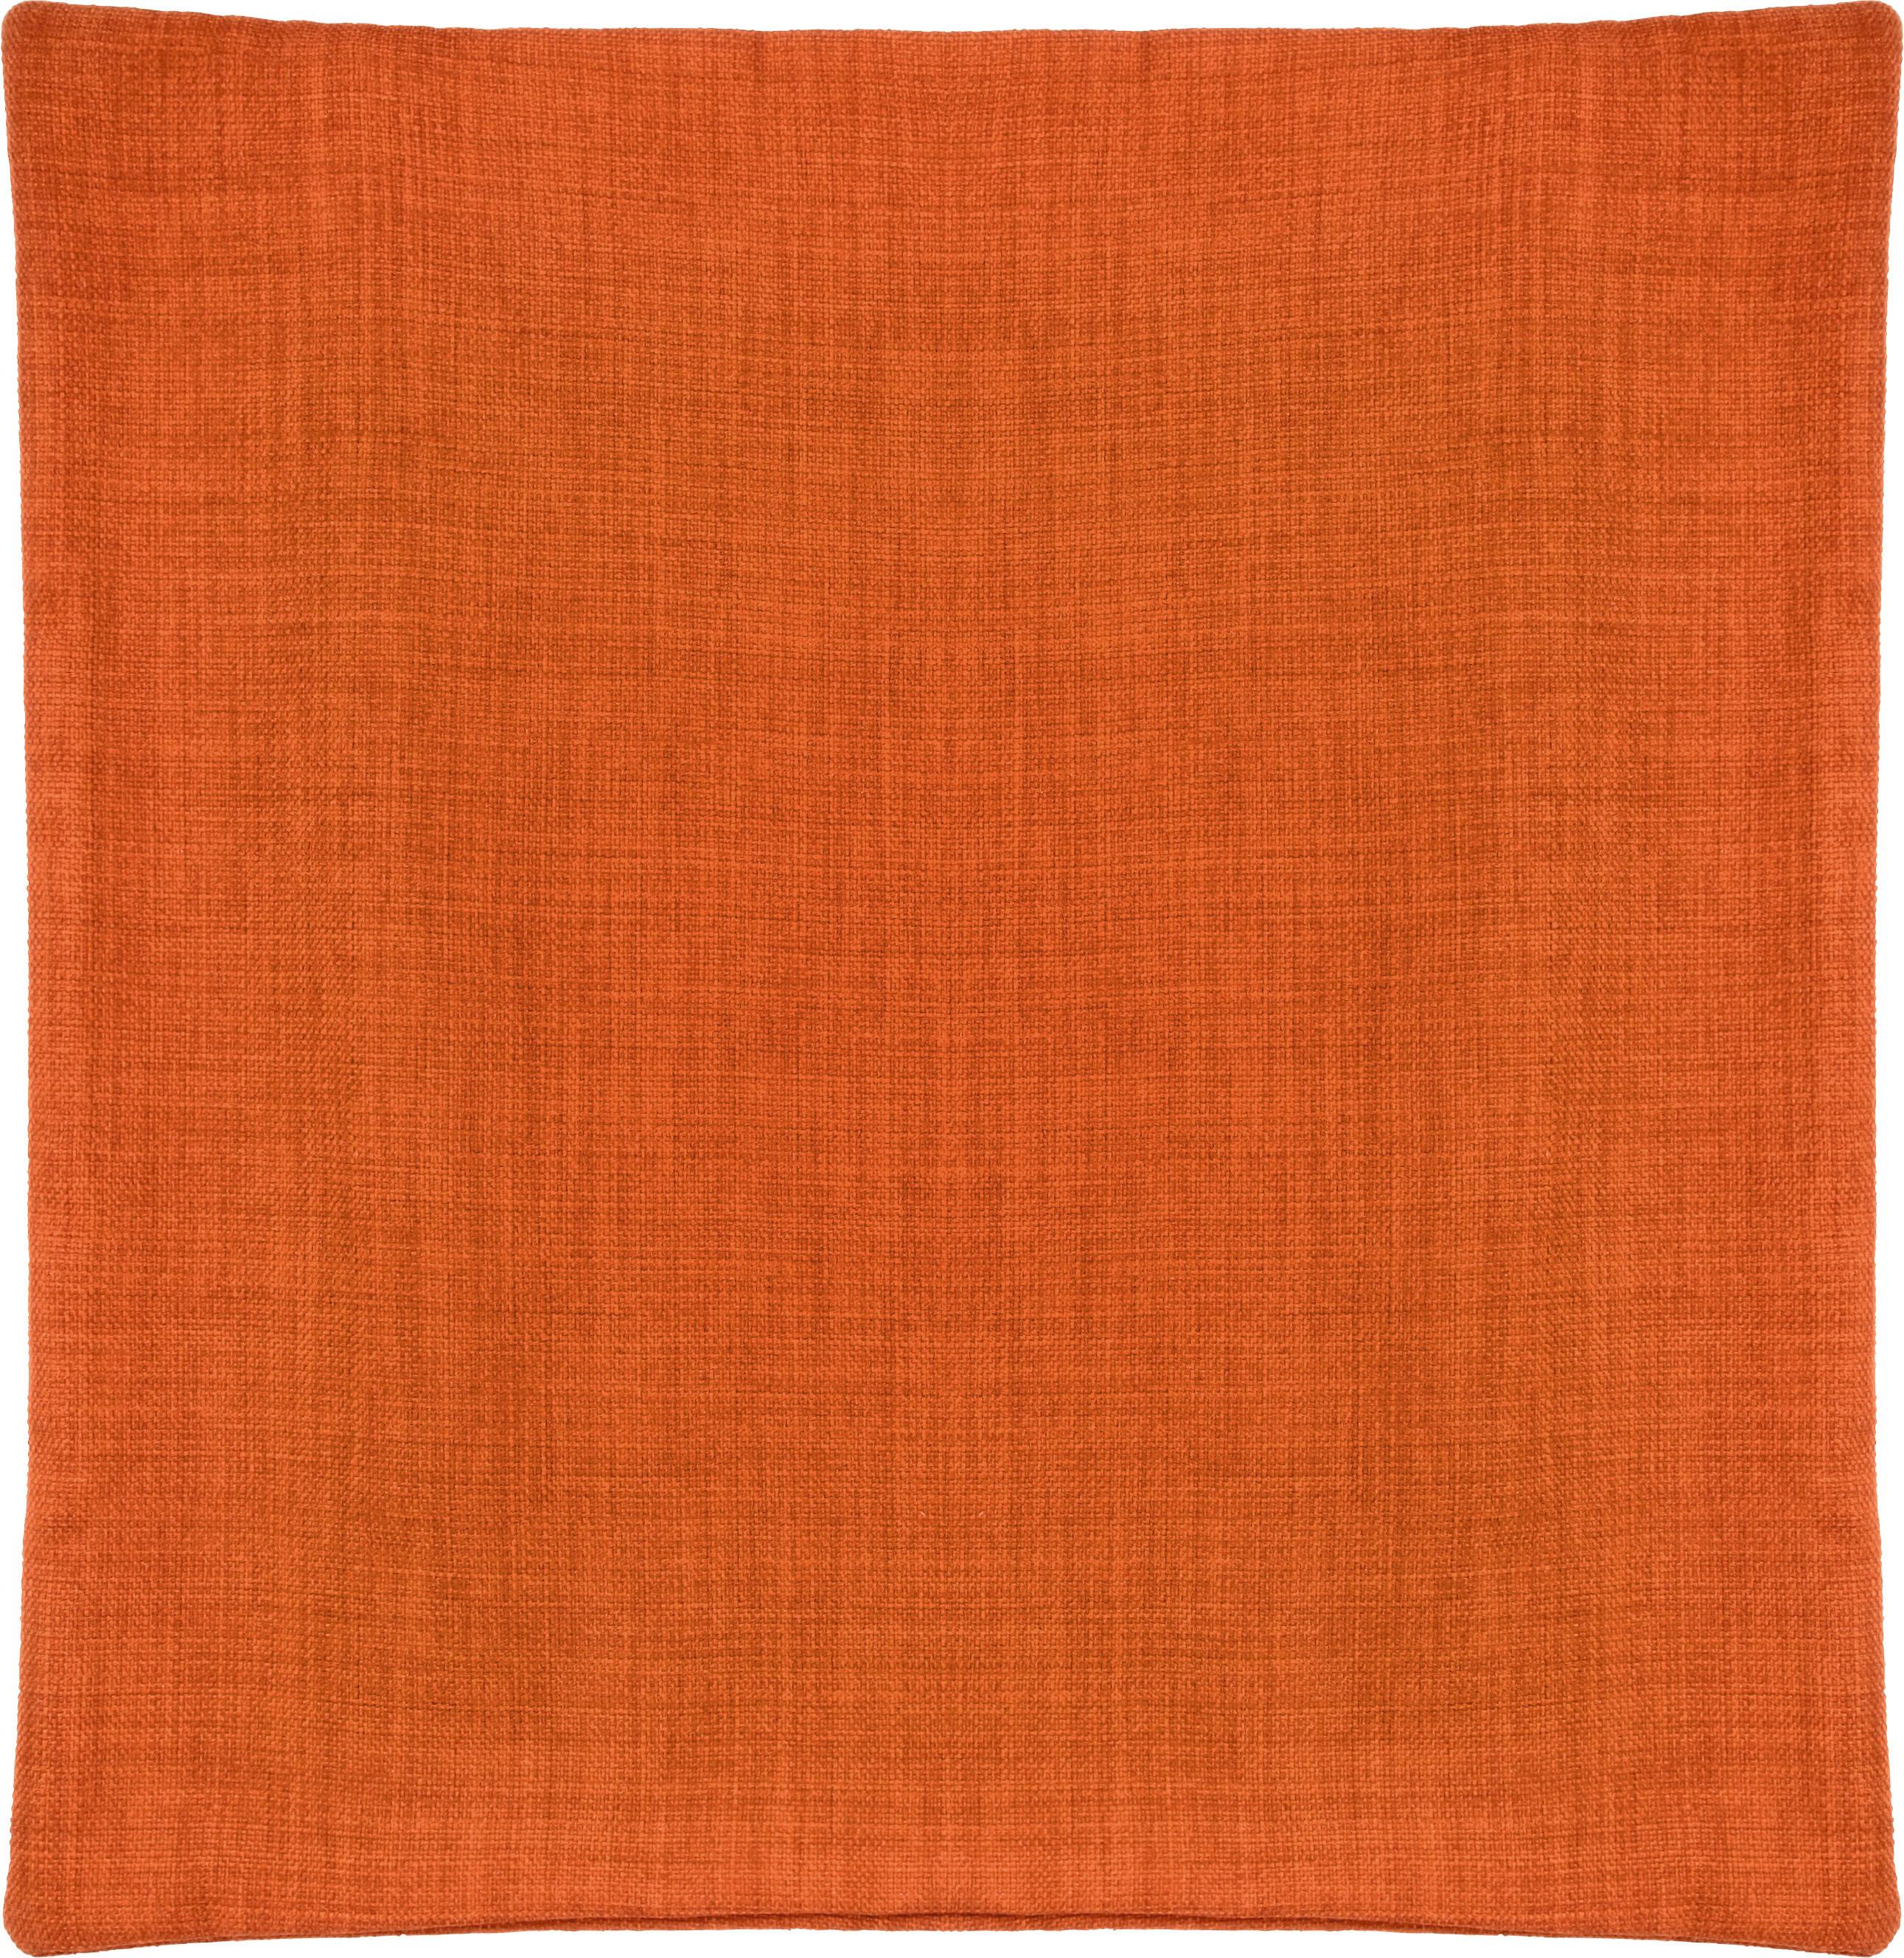 Párnahuzat Párnahuzat Vászon 50/50 - Narancs, konvencionális, Textil (50/50cm) - Modern Living